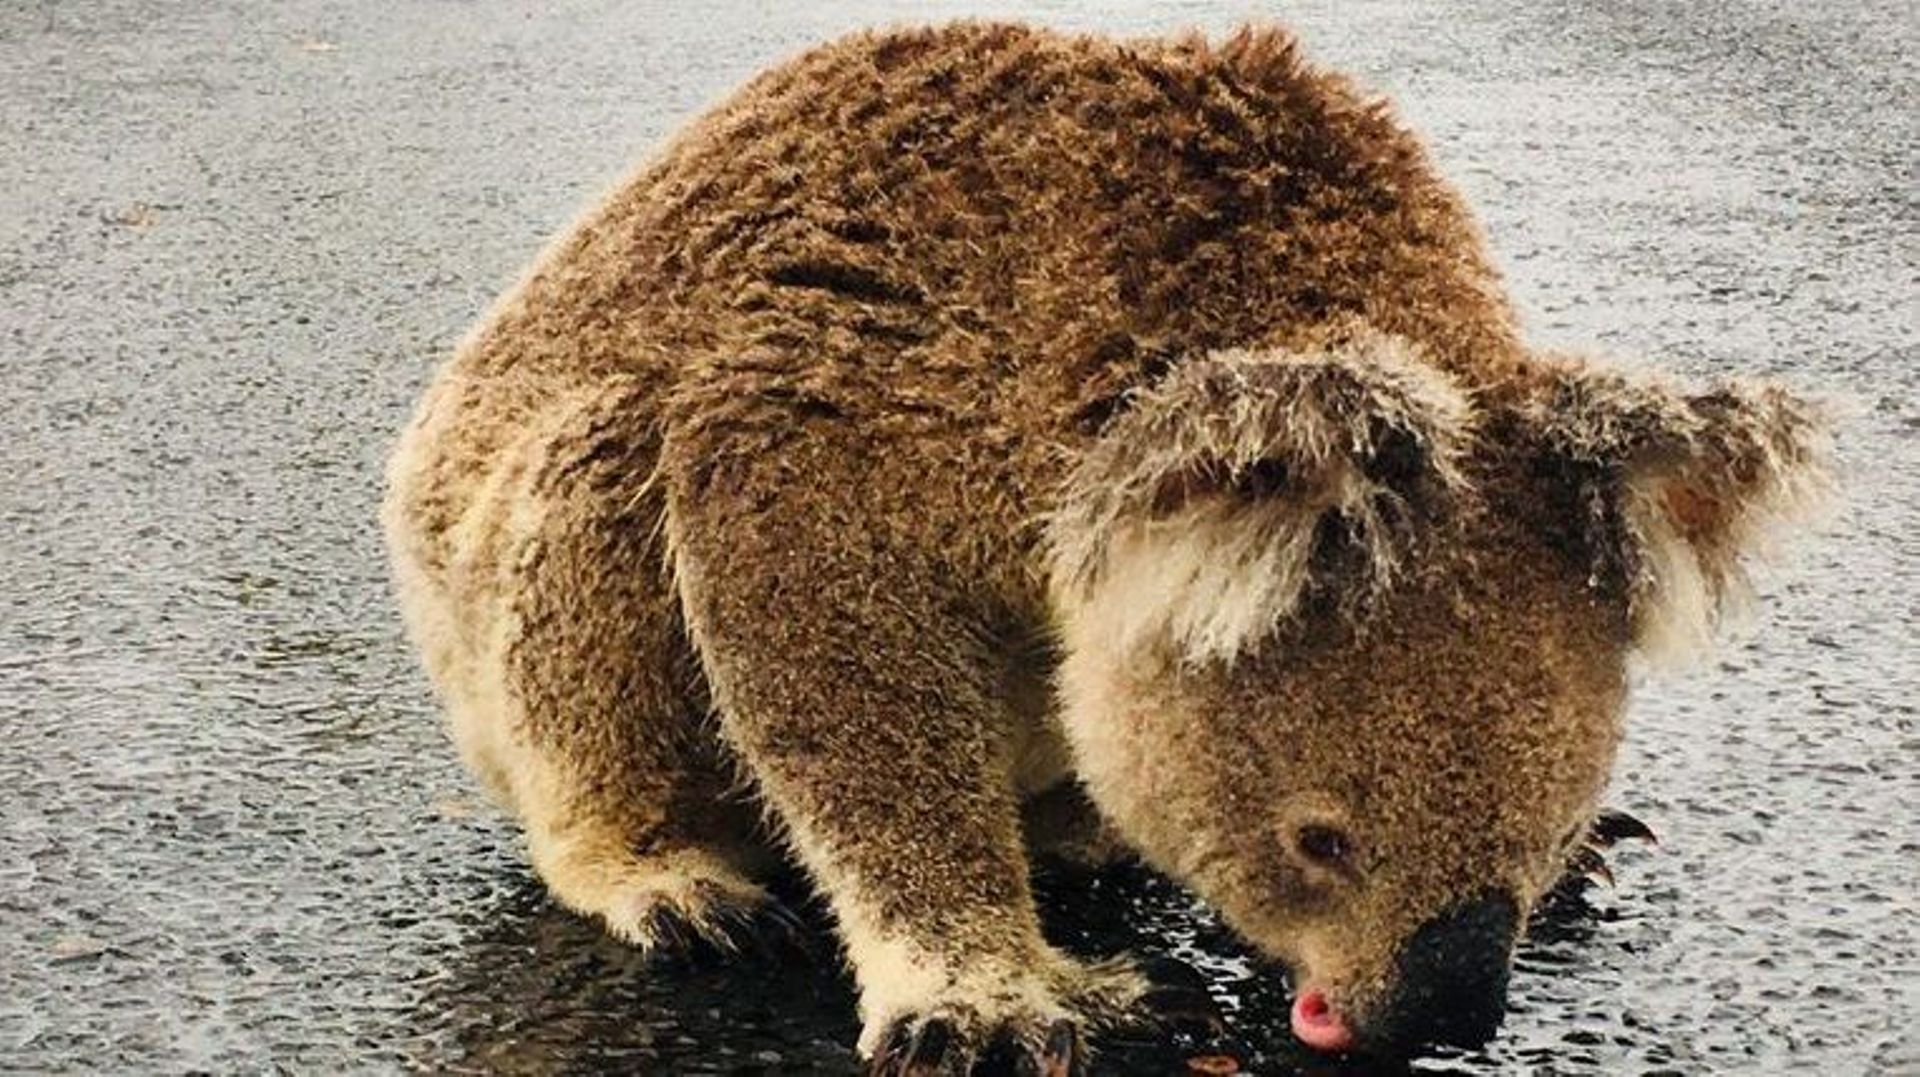 Un koala bloque la circulation pour boire l'eau sur l'asphalte de la route: "Tellement soif qu'il refusait de bouger"